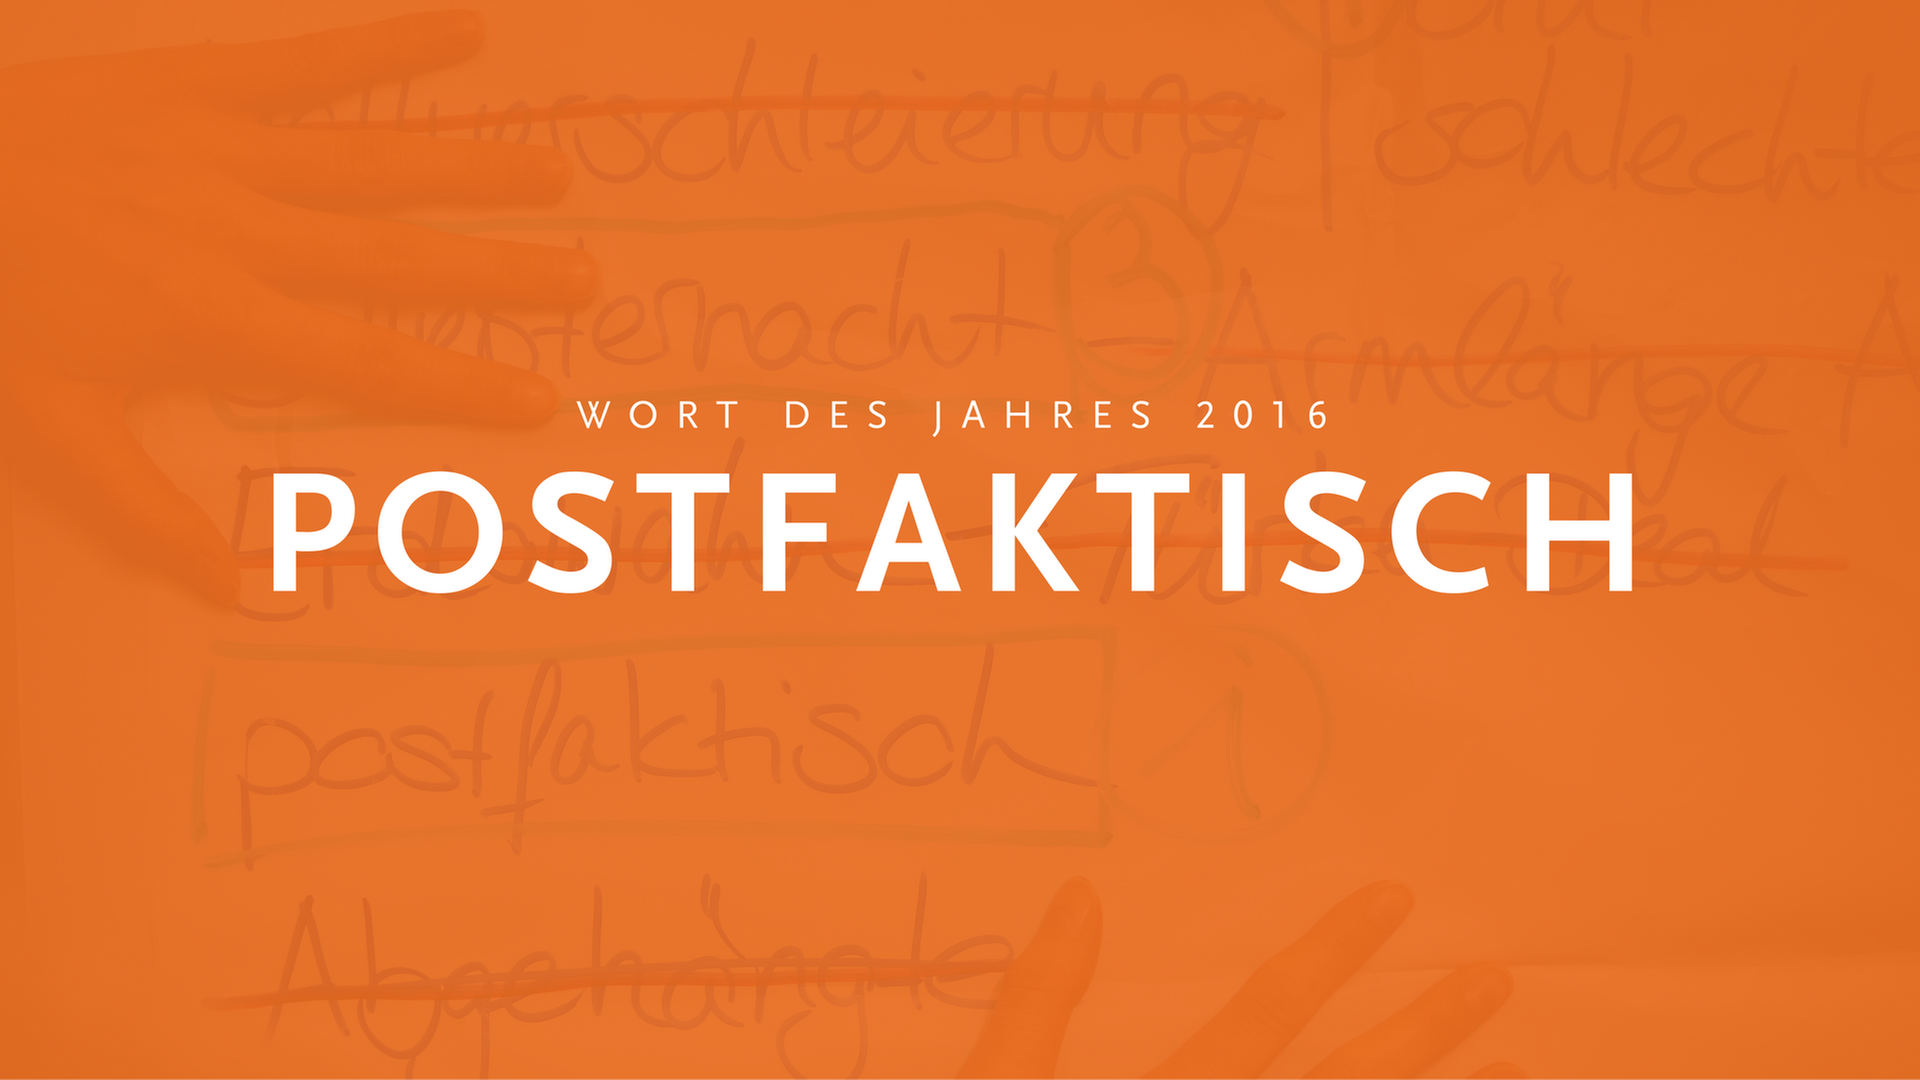 "Postfaktisch" ist "Wort des Jahres" 2016.